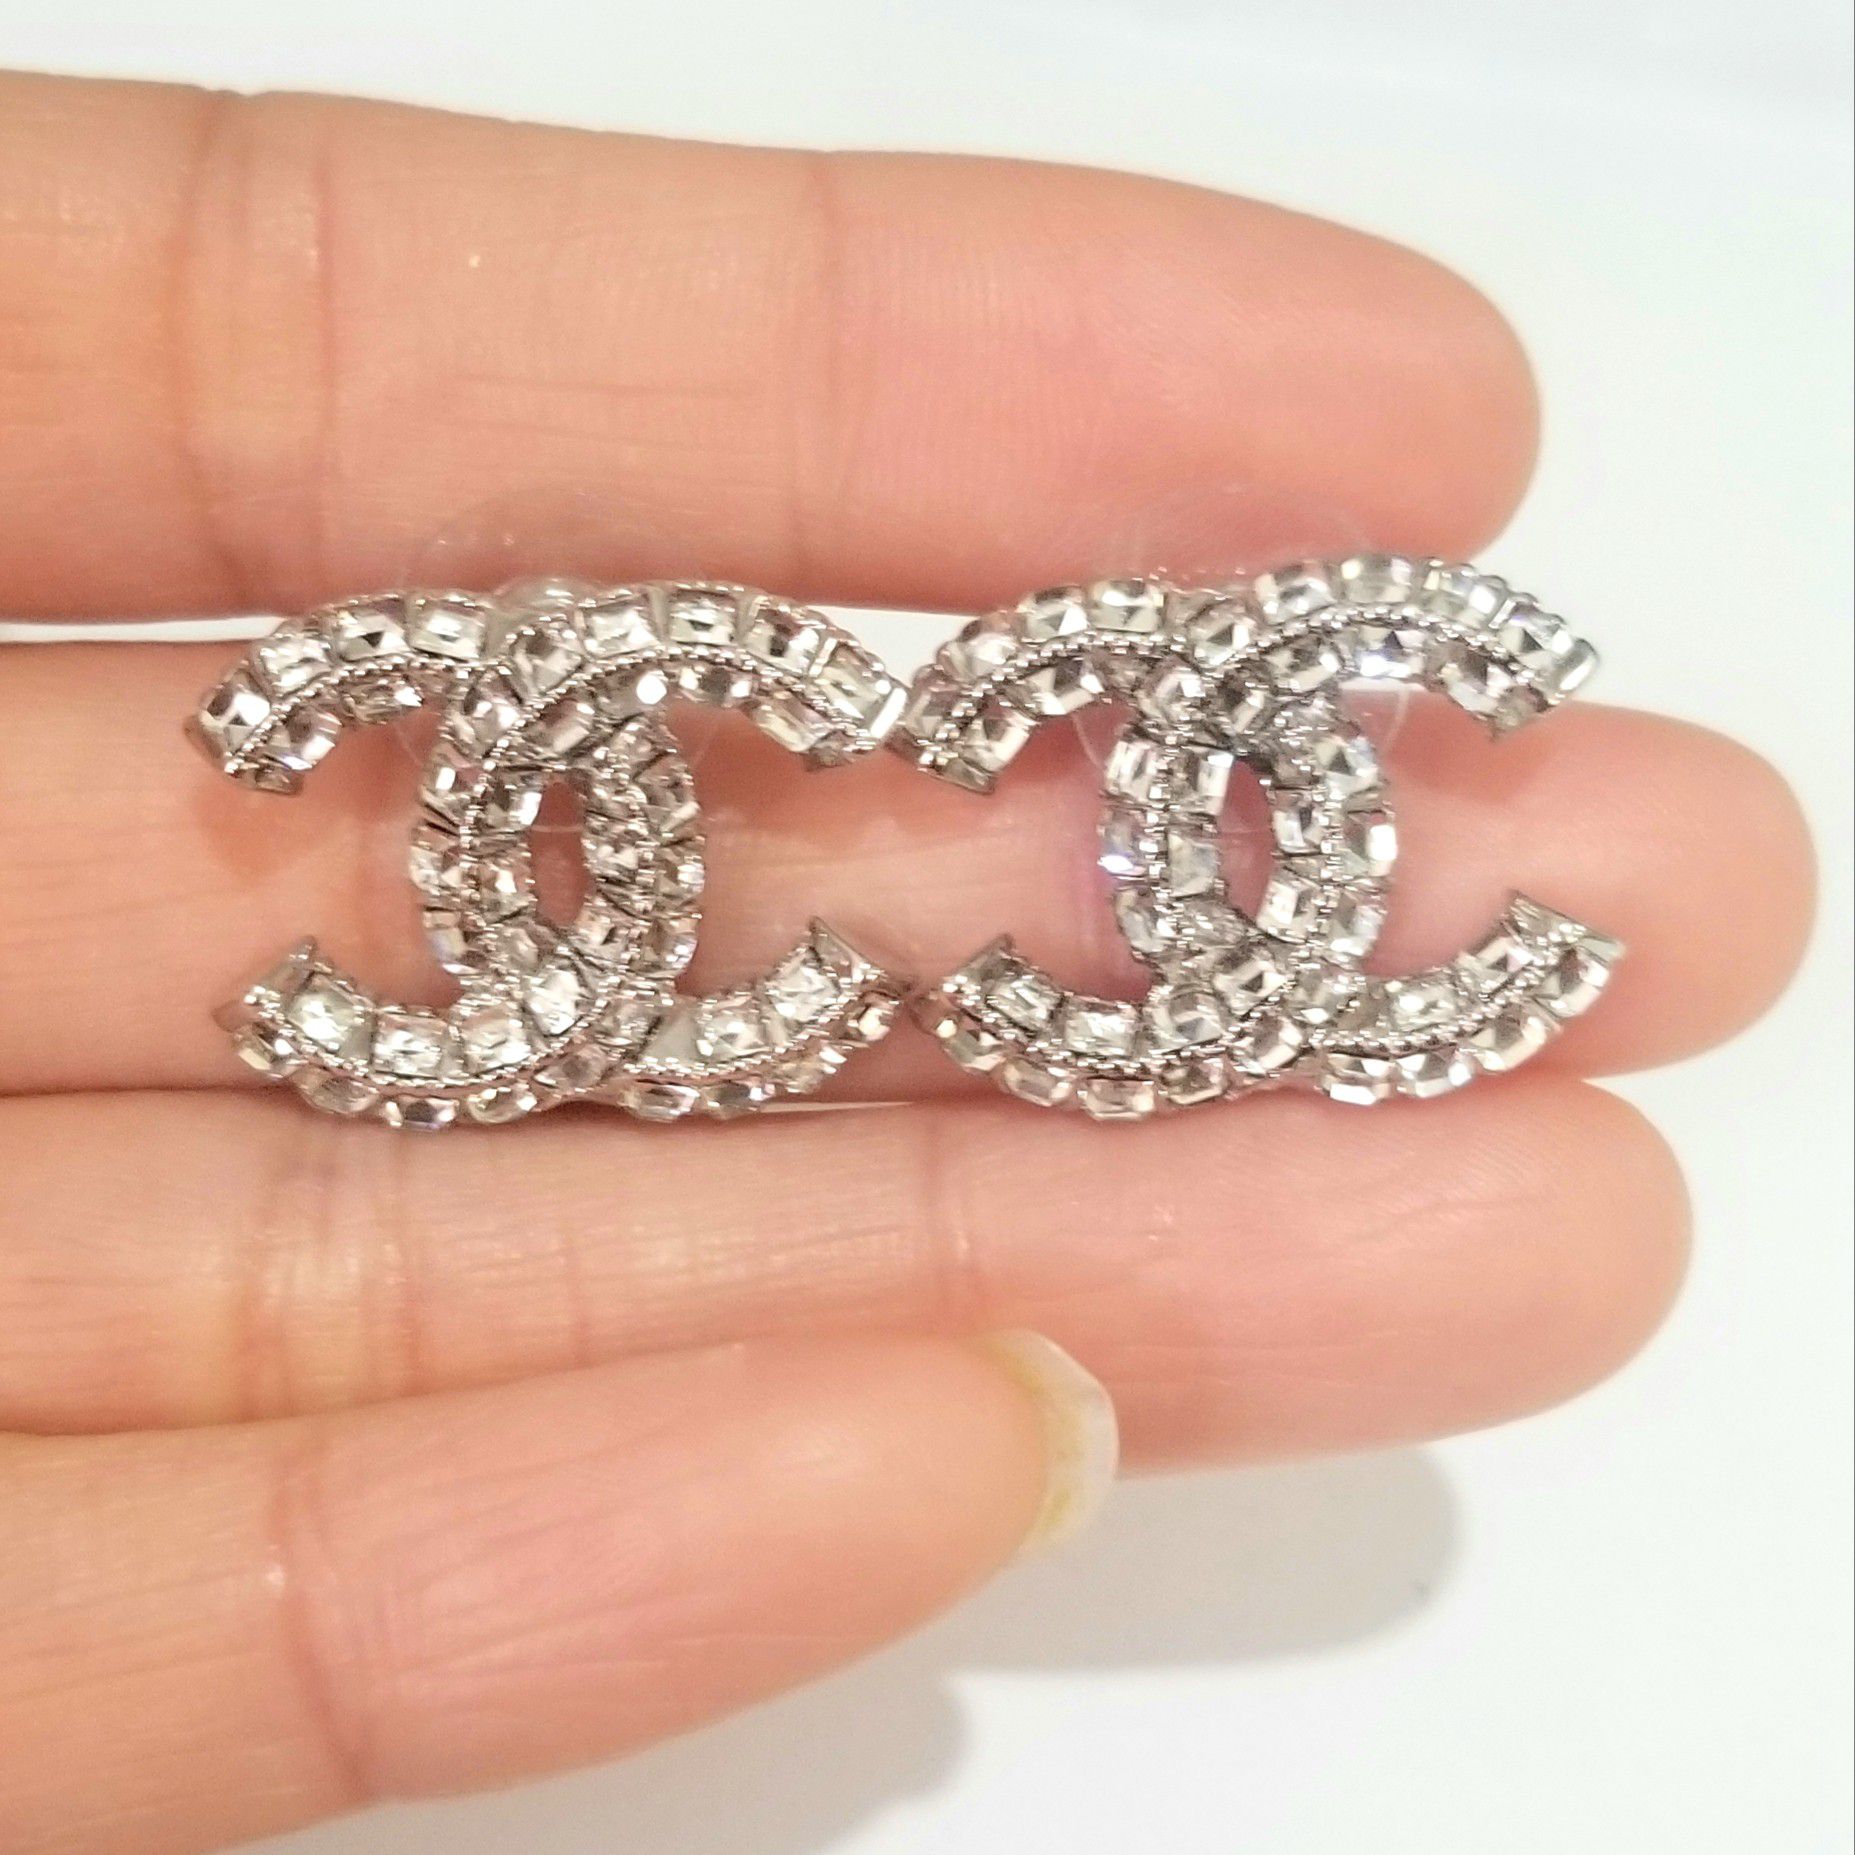 Cz diamond studs earrings silver